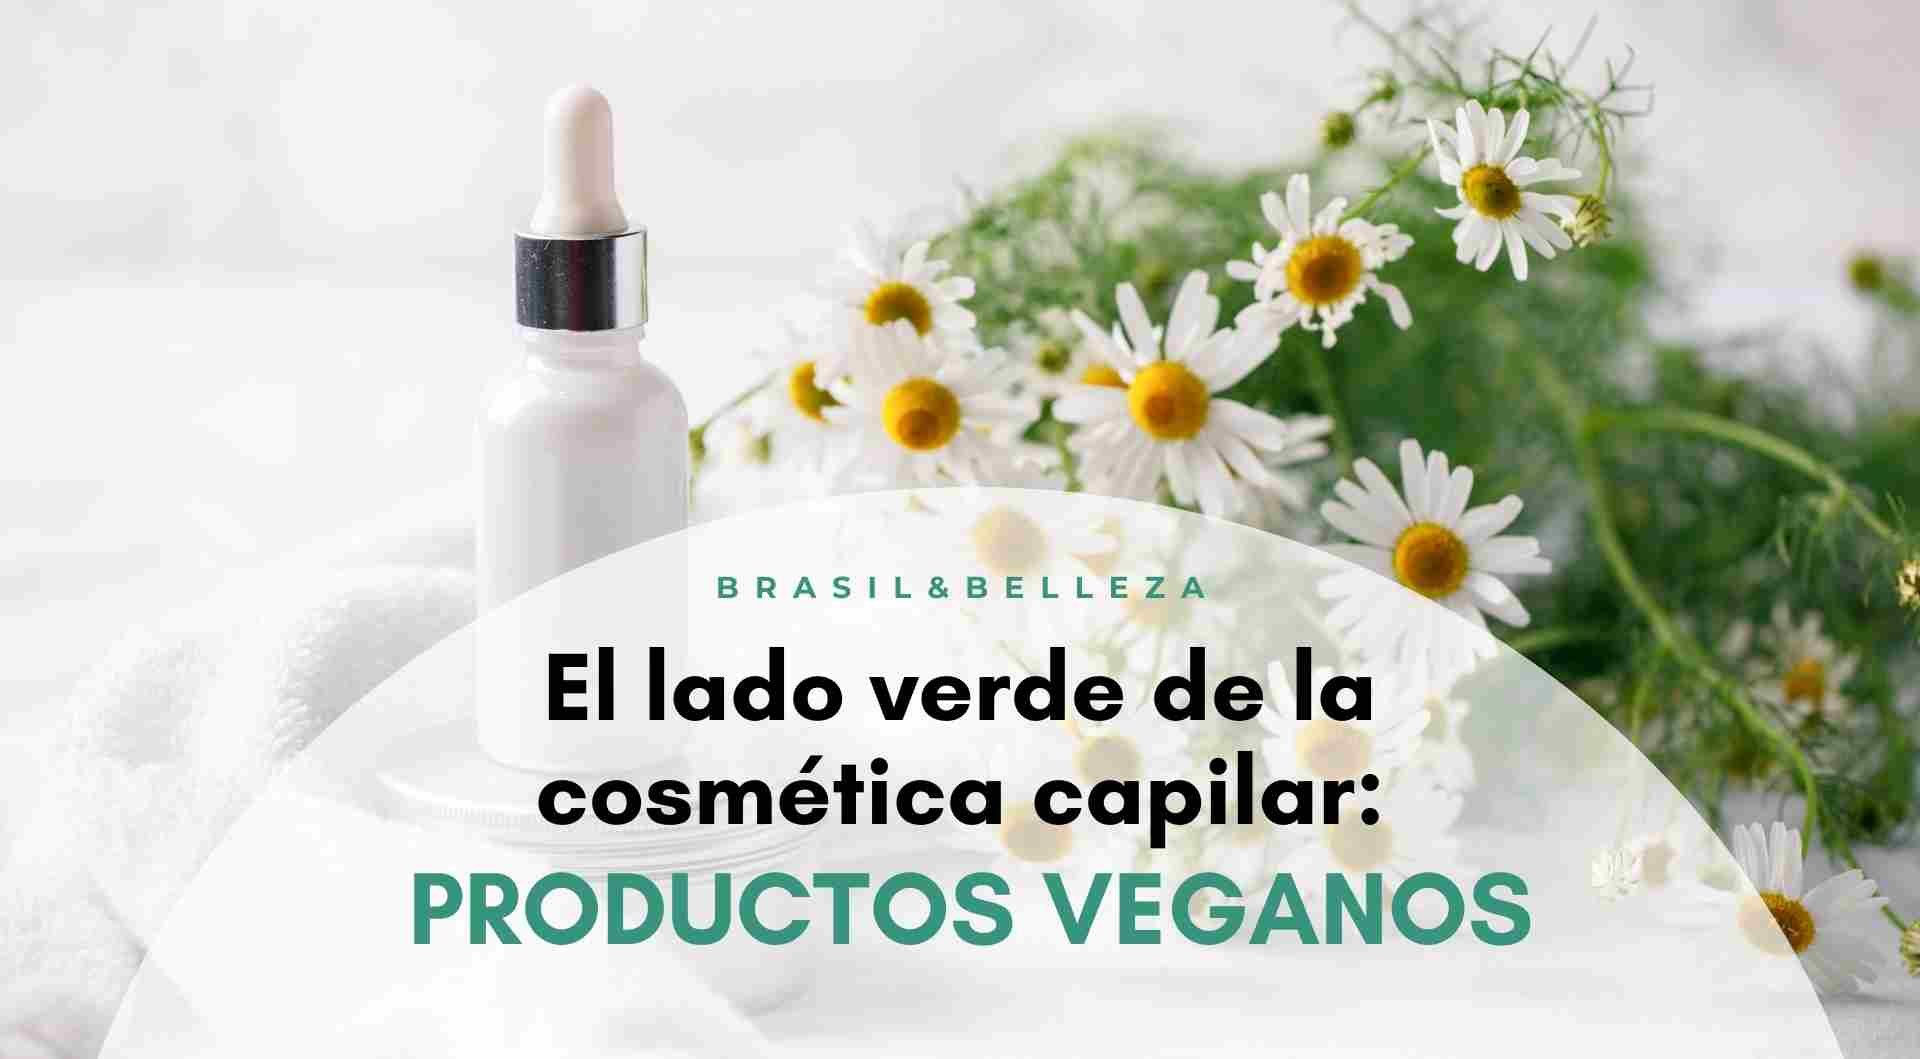 El lado verde de la cosmética capilar: productos veganos